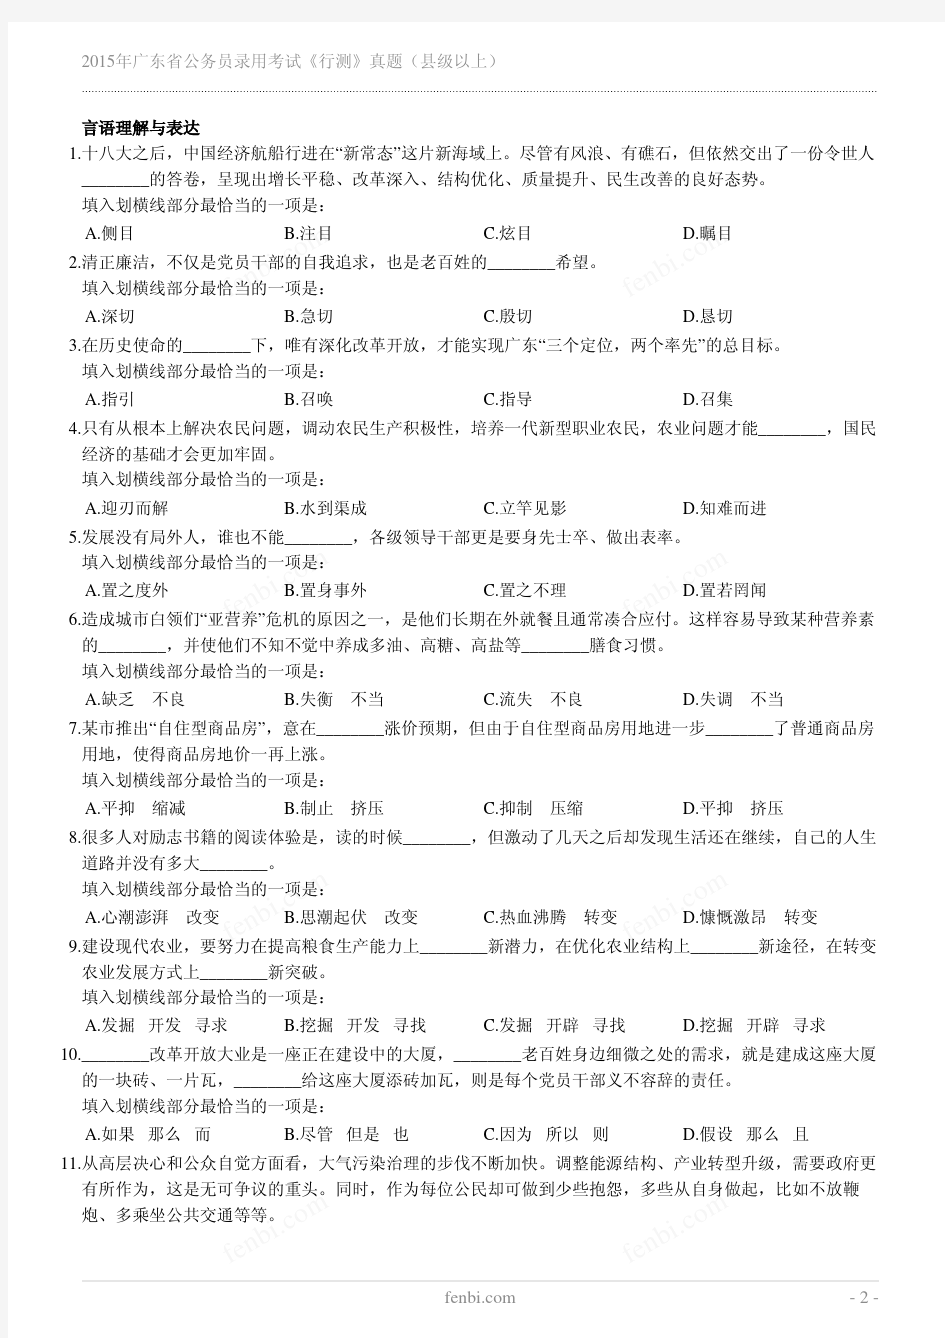 2015年广东省公务员录用考试《行测》真题(县级以上)